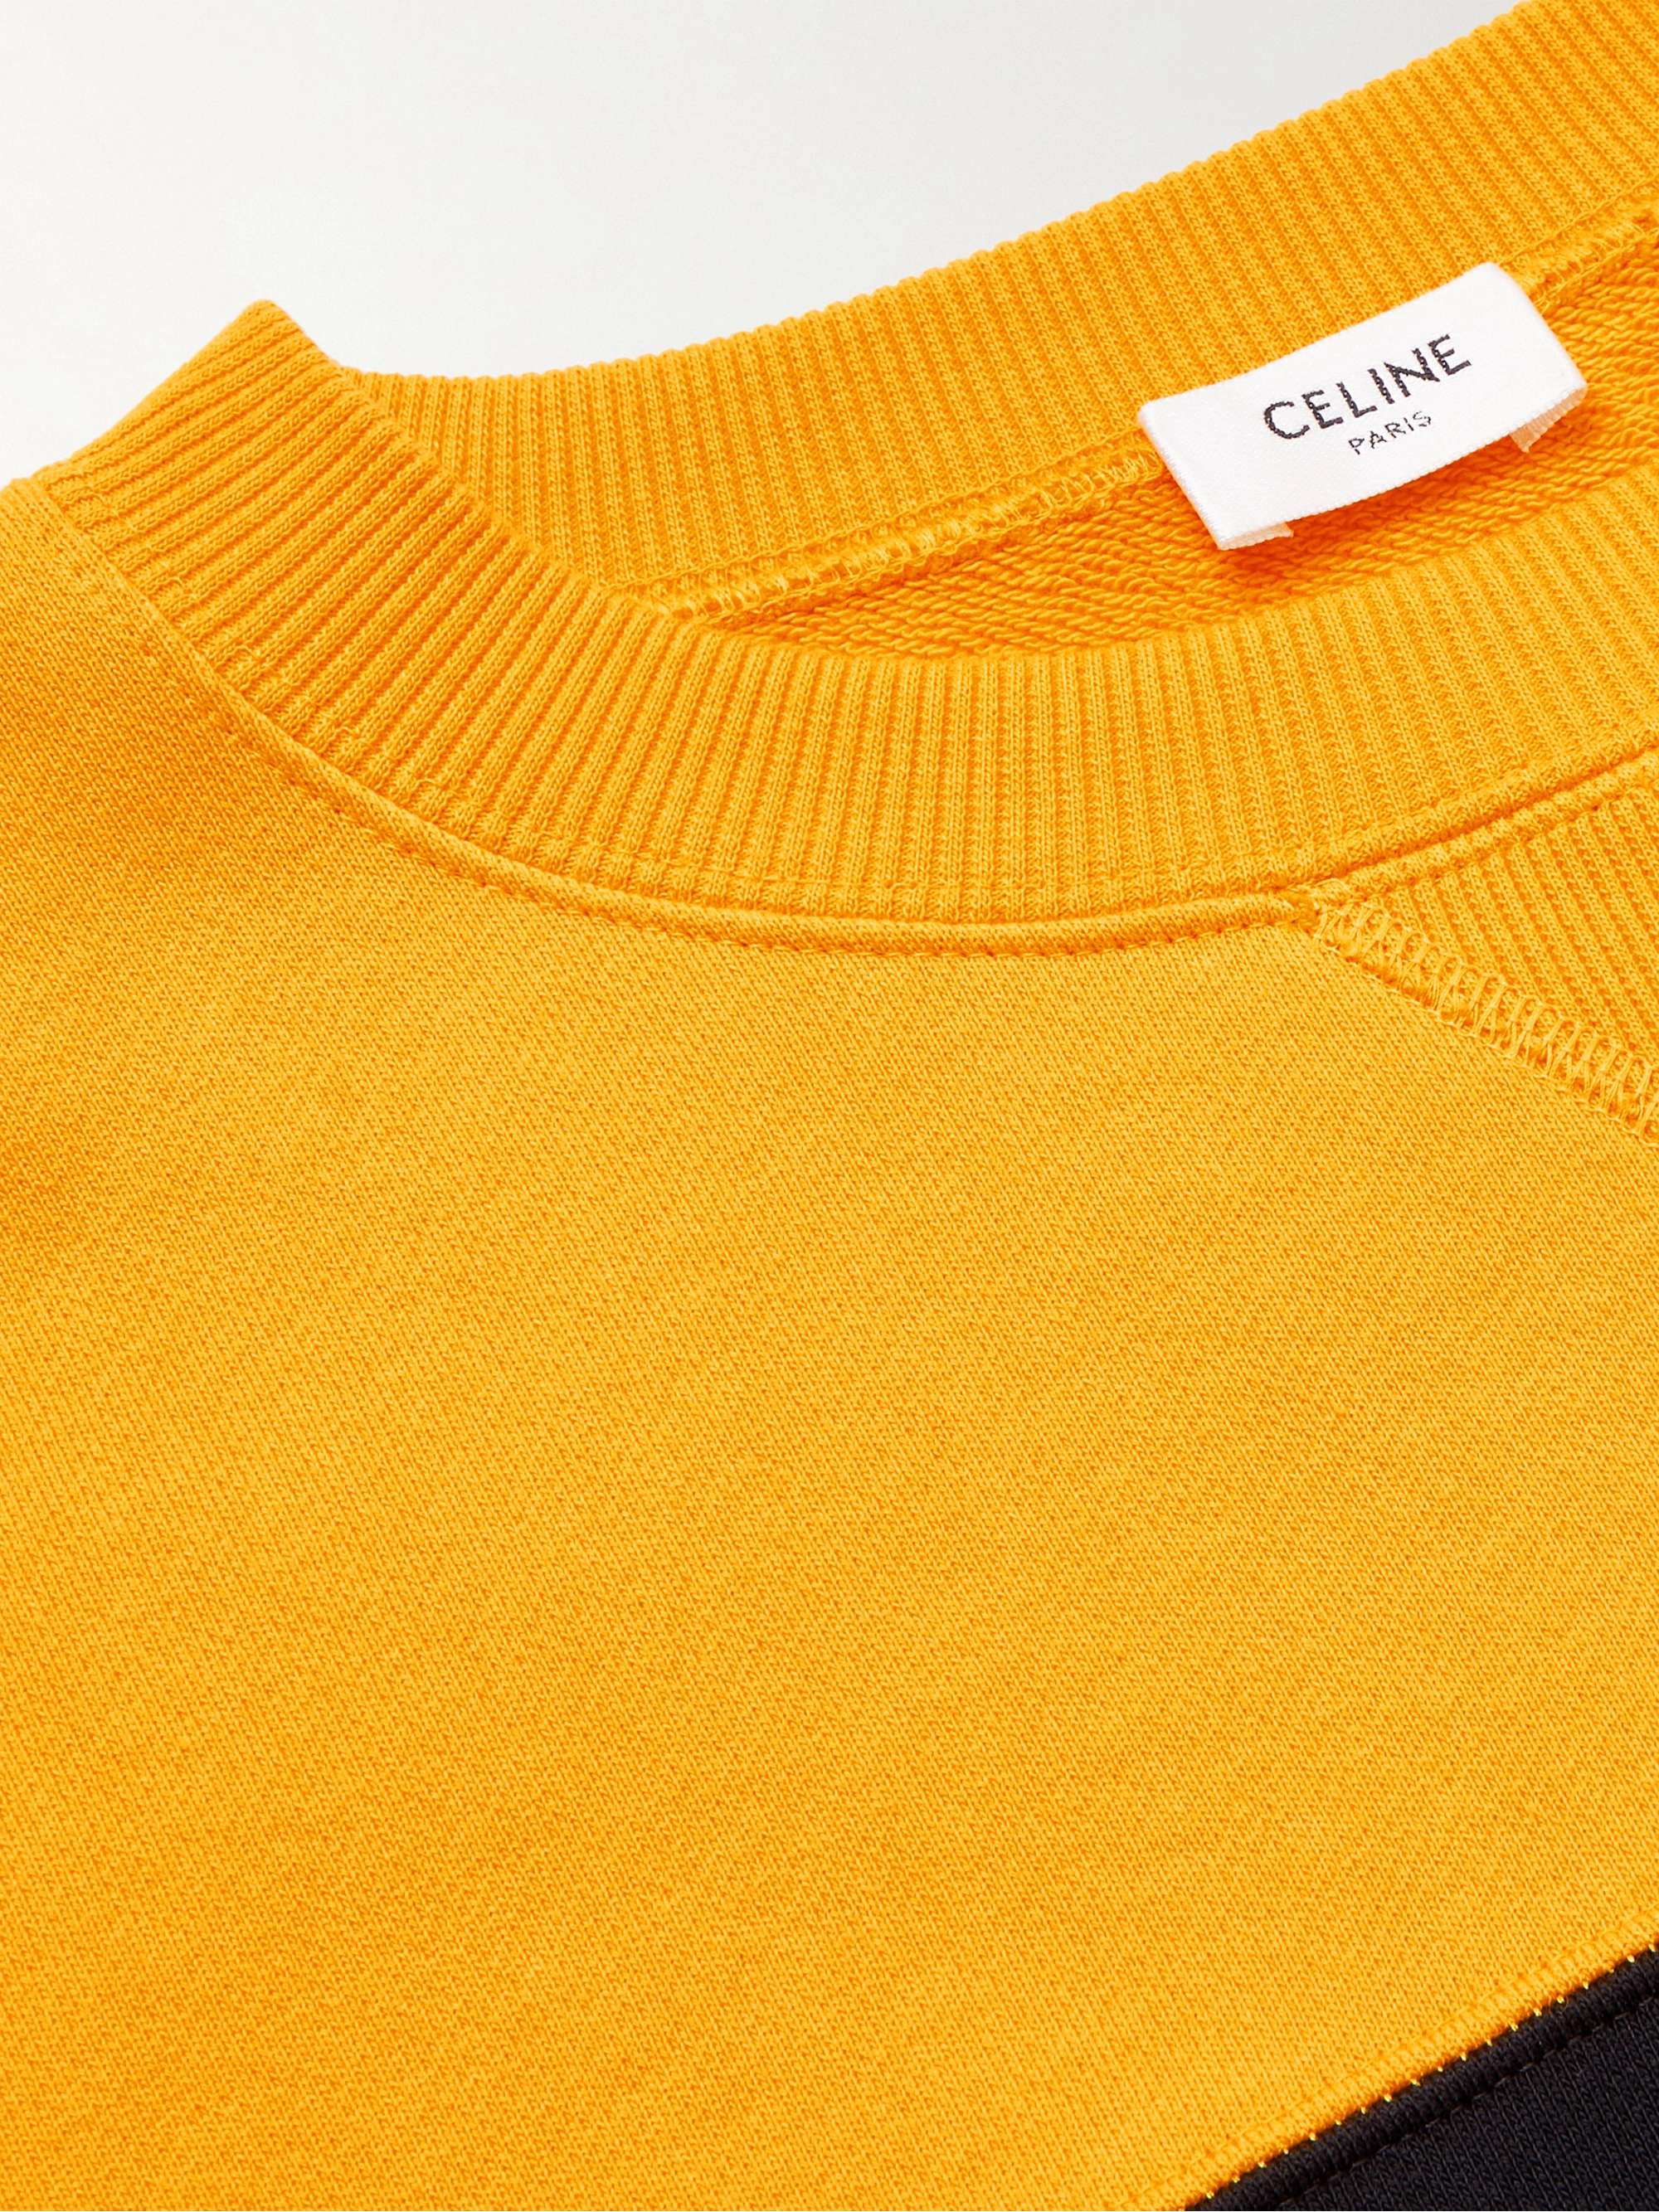 CELINE HOMME Logo-Print Colour-Block Cotton-Blend Jersey Sweatshirt